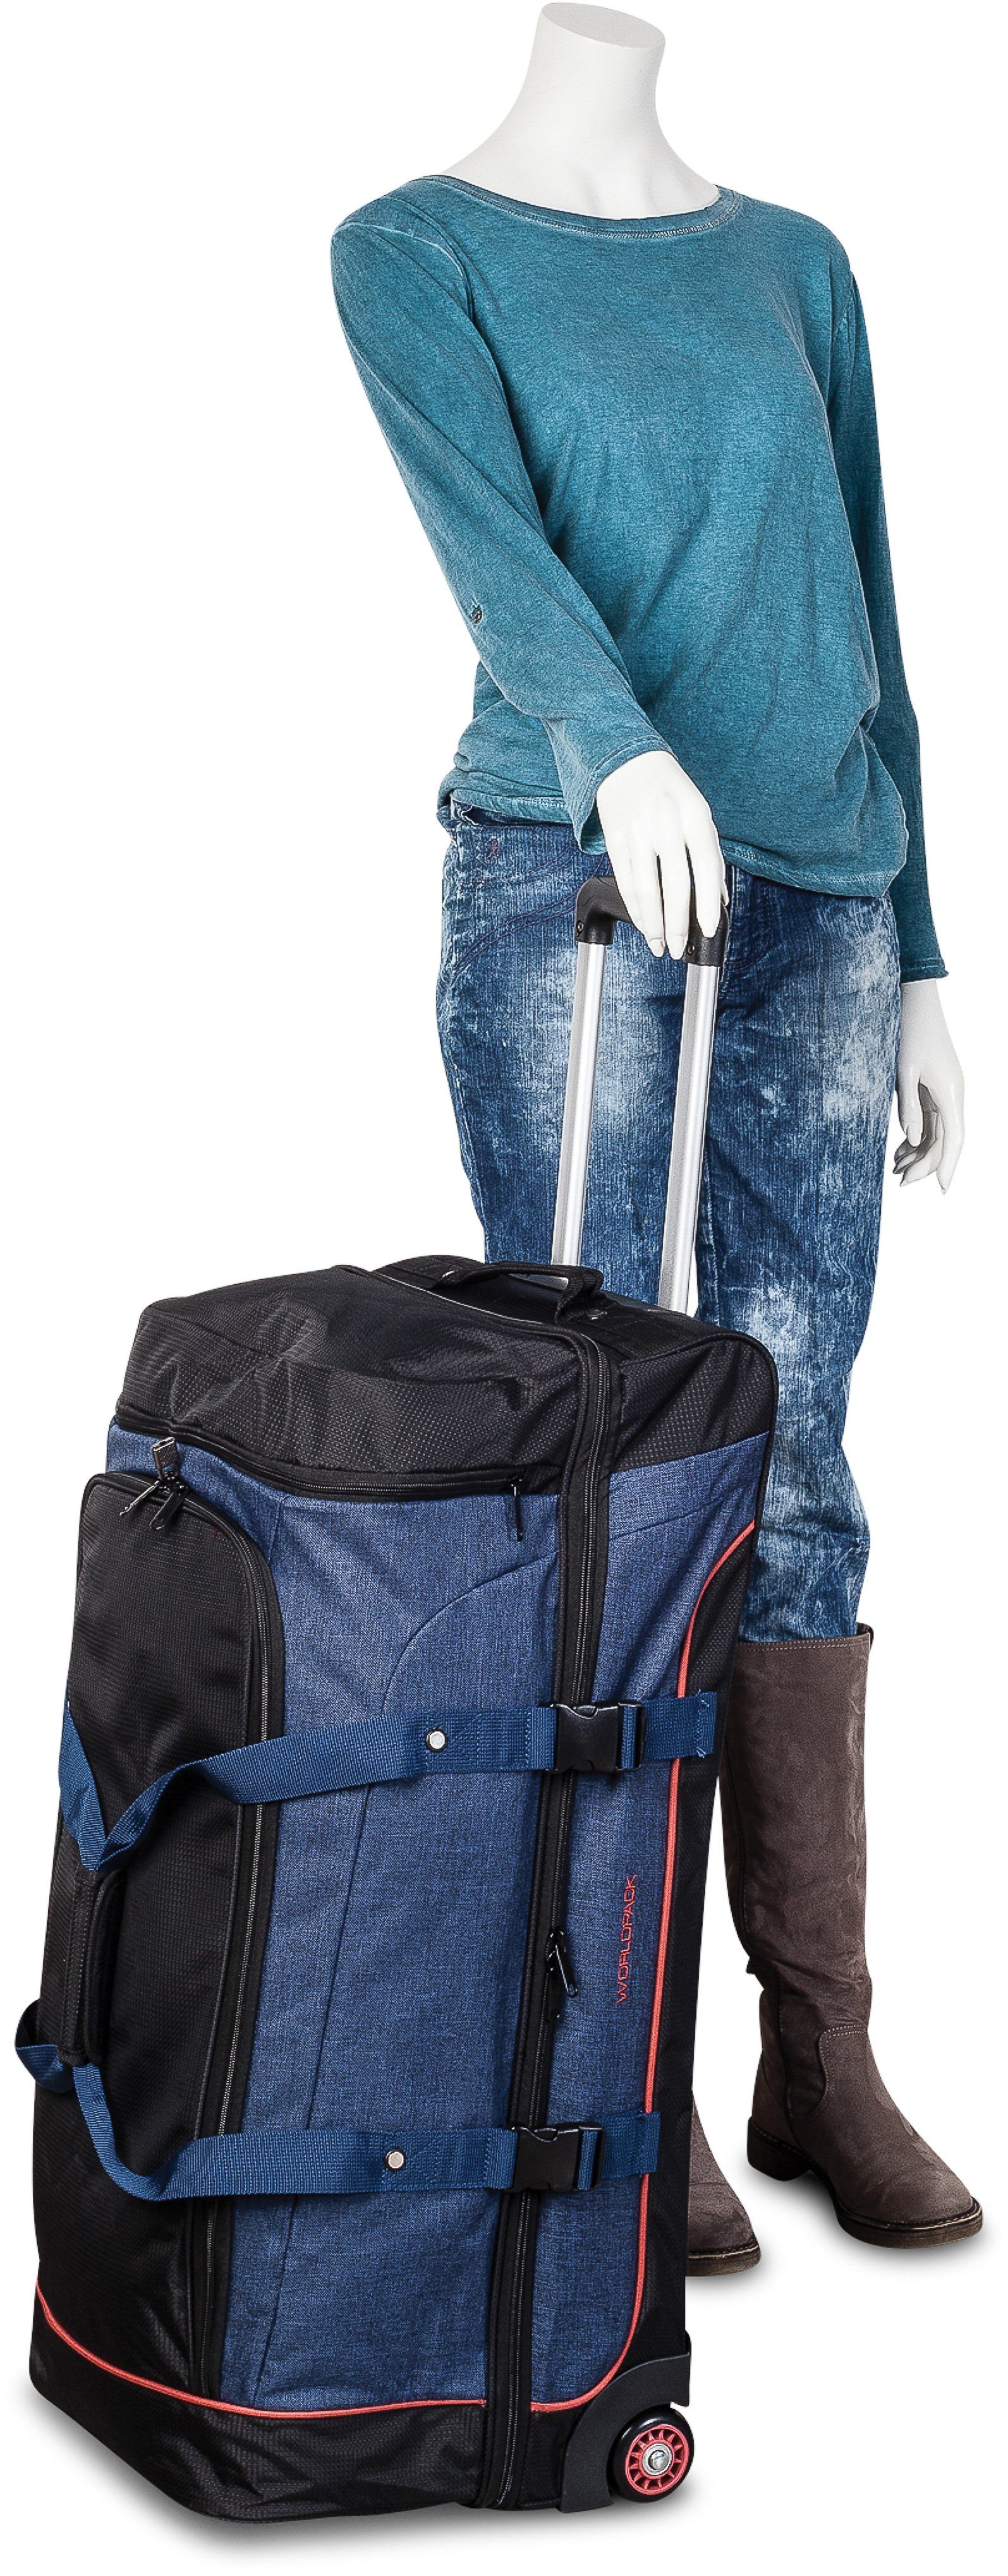 Reisetasche mit Rollen WORLDPACK marineblau blau,